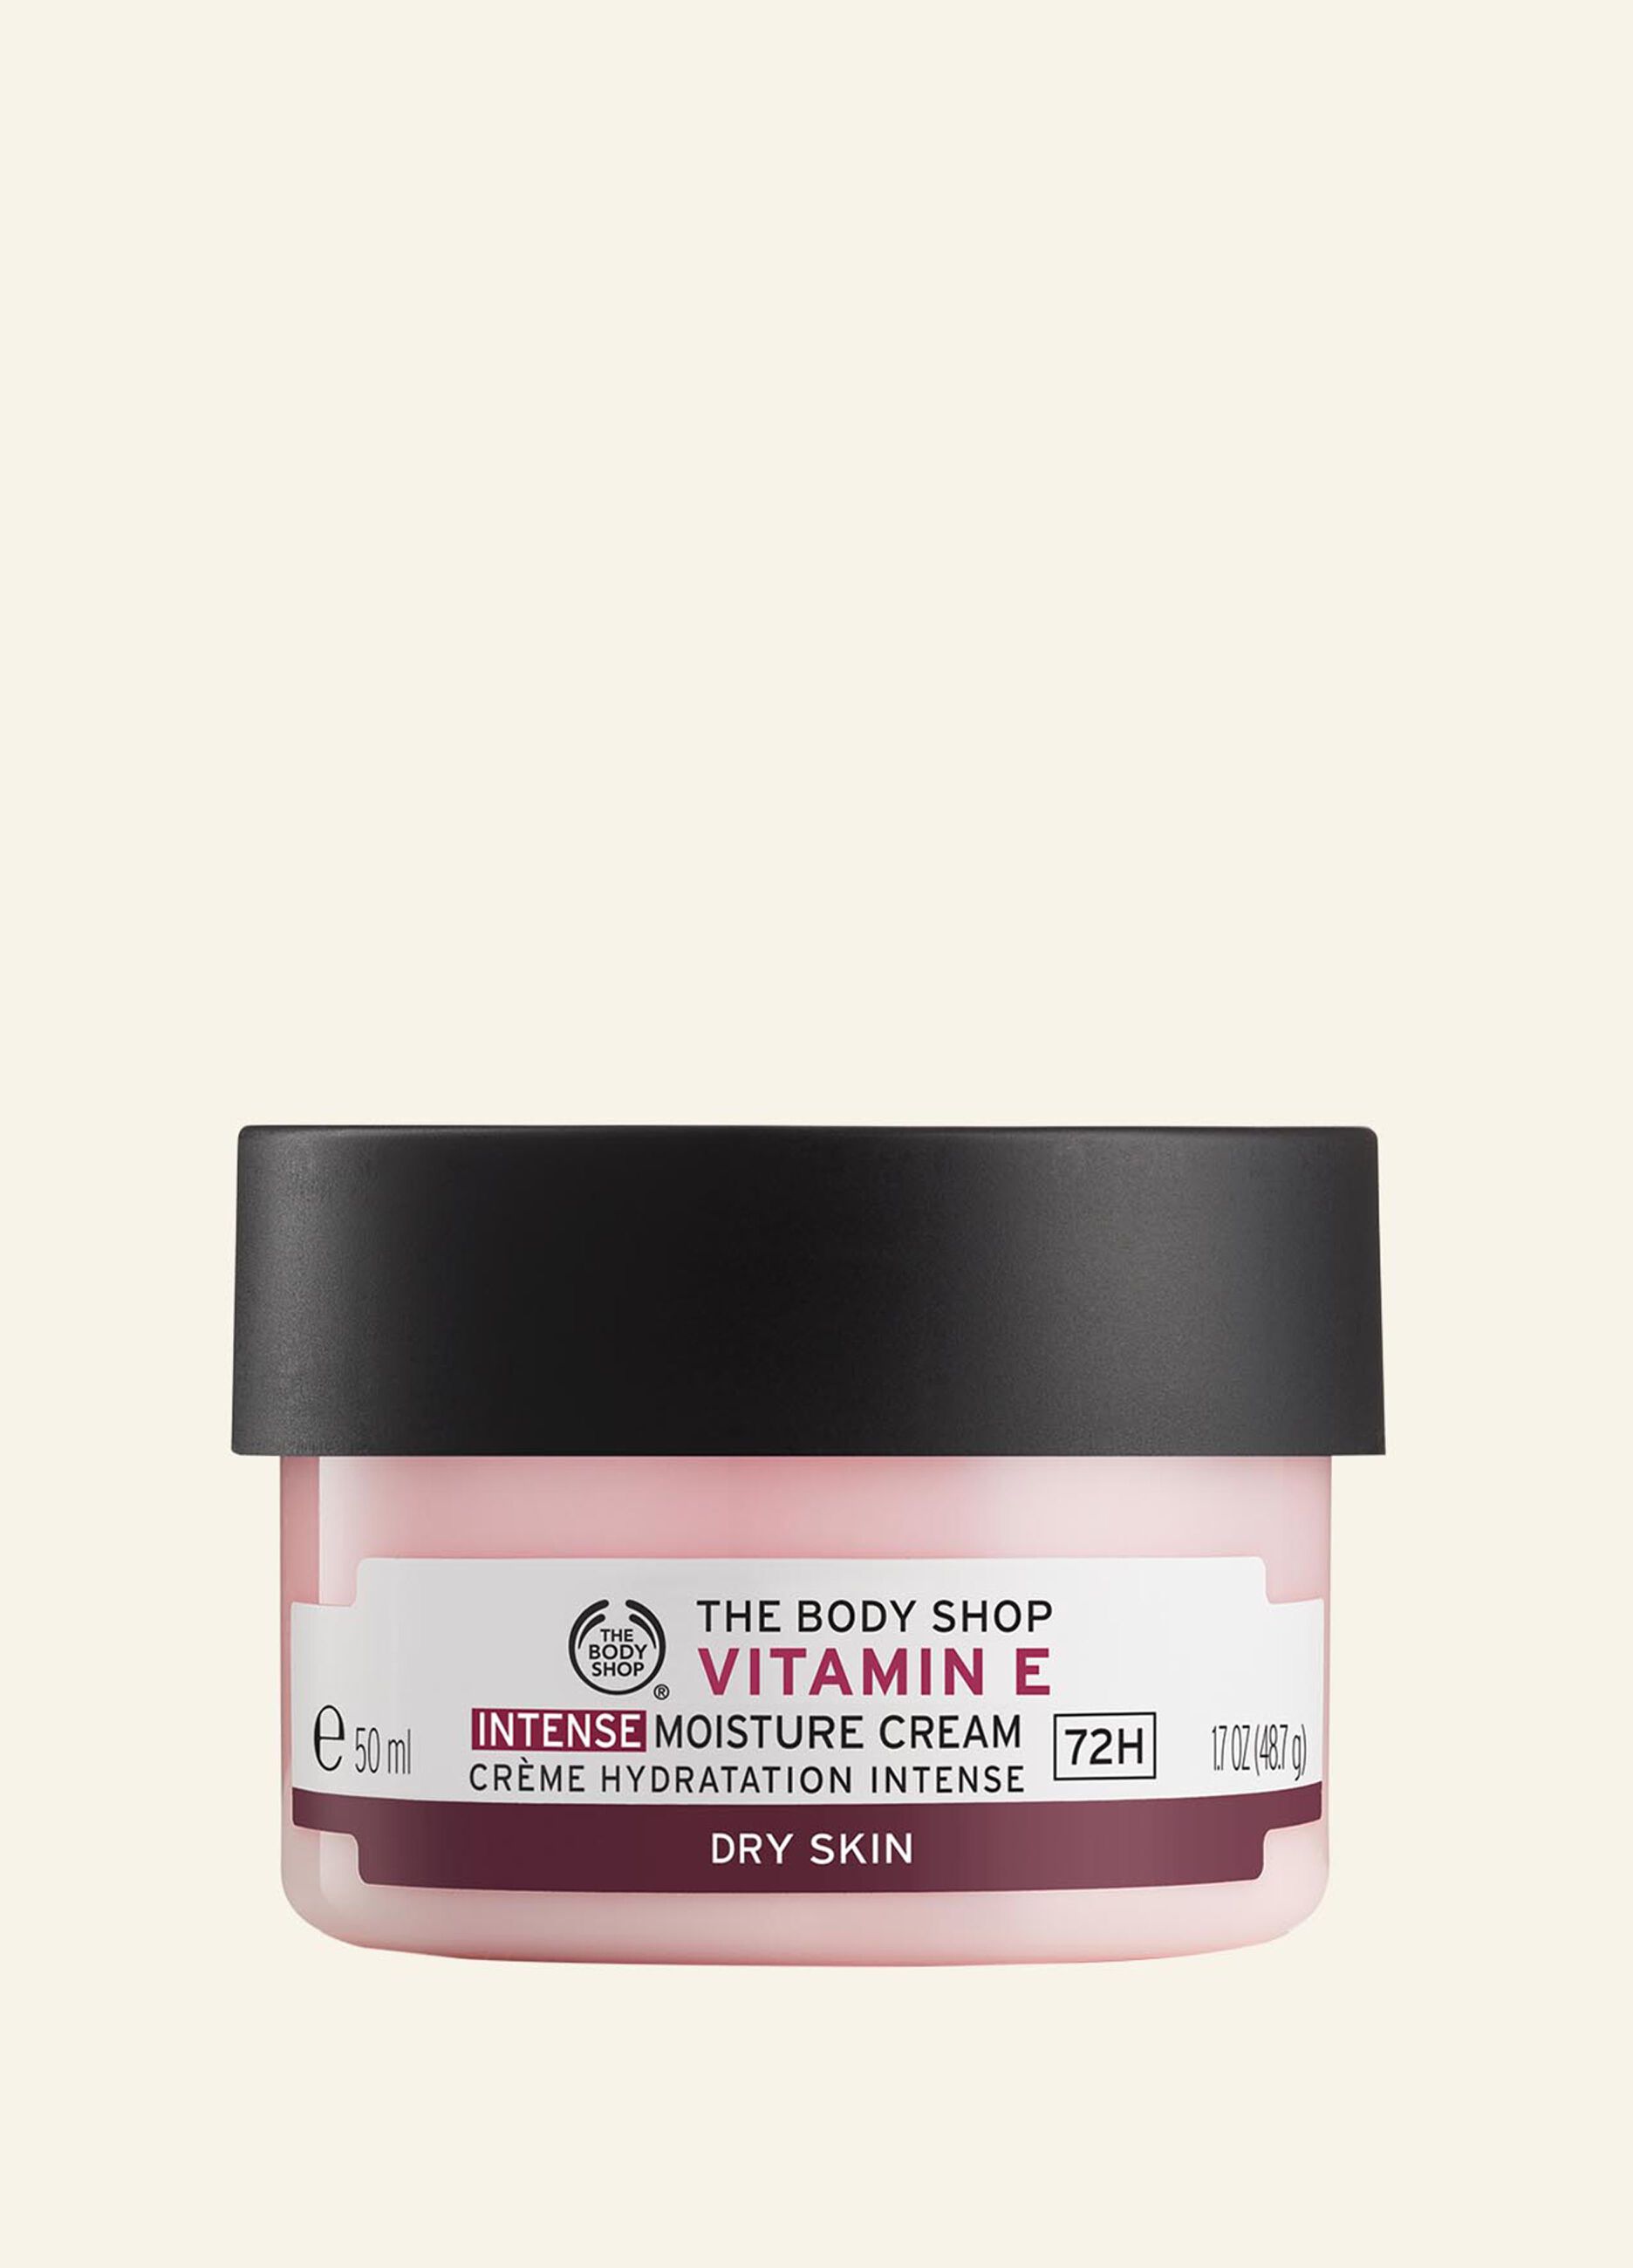 The Body Shop intensive moisturising cream with vitamin E 50ml